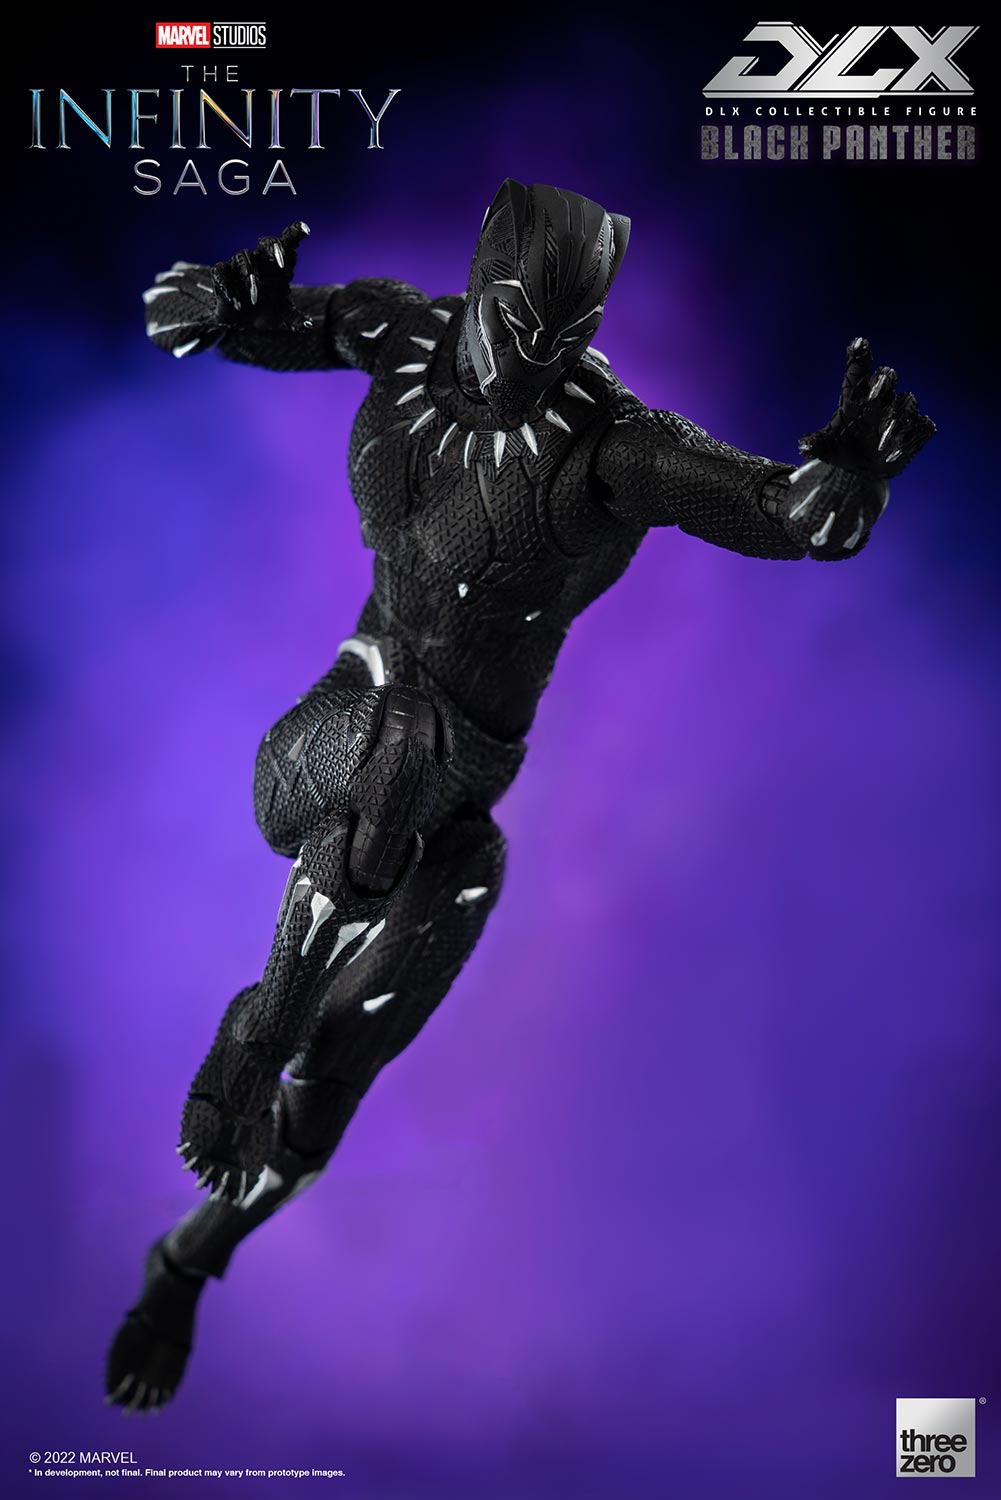 Hot Toys: Black Panther »Original Suit«